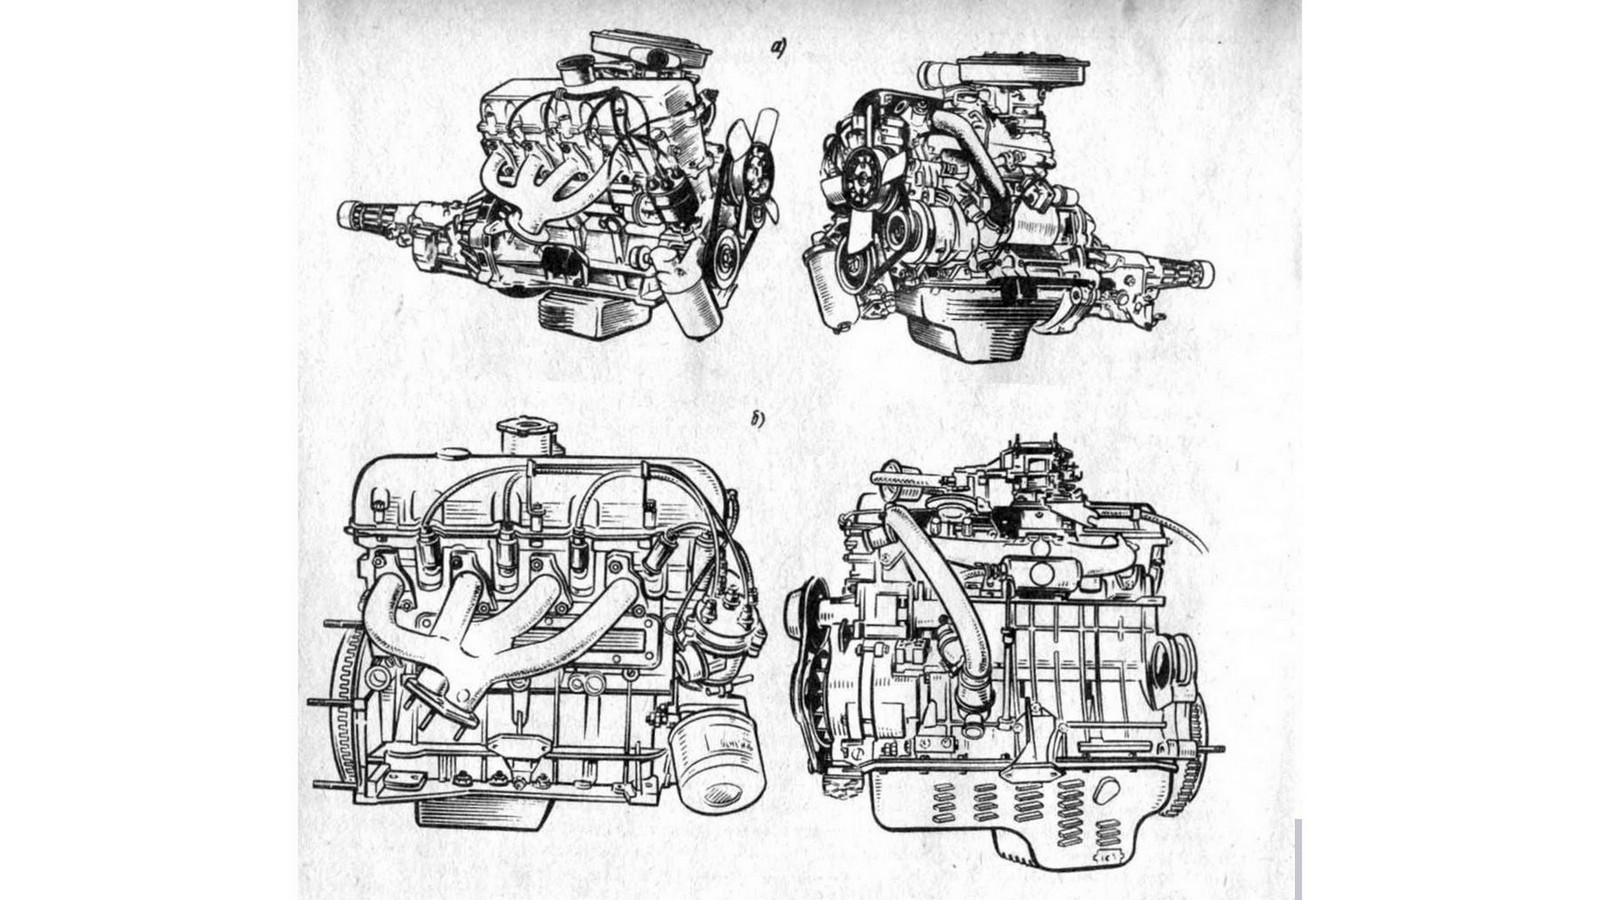 Нехватку силовых агрегатов на АЗЛК пытались компенсировать полуторалитровым уфимским мотором, но он оказался заметно слабее жигулёвского двигателя